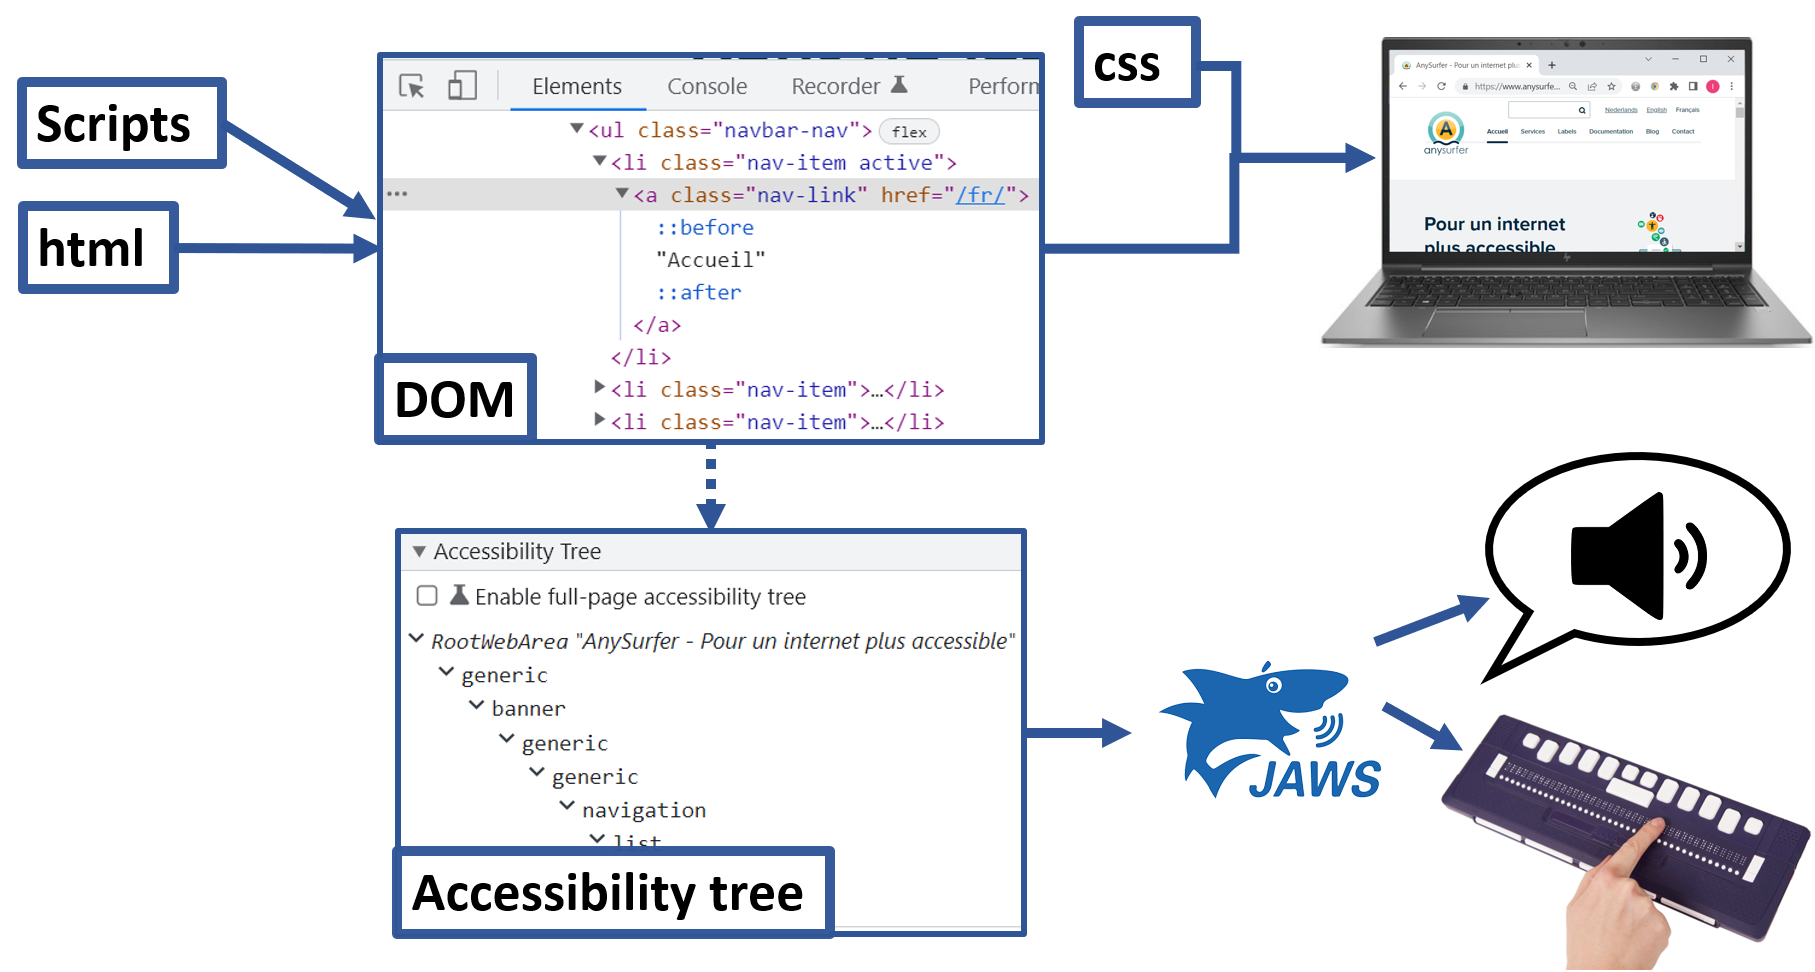 l'accessibility tree est créé à partir du DOM, le lecteur d'écran JAWS utilise l'accessibility tree pour restituer l'info en braille et sous forme de son